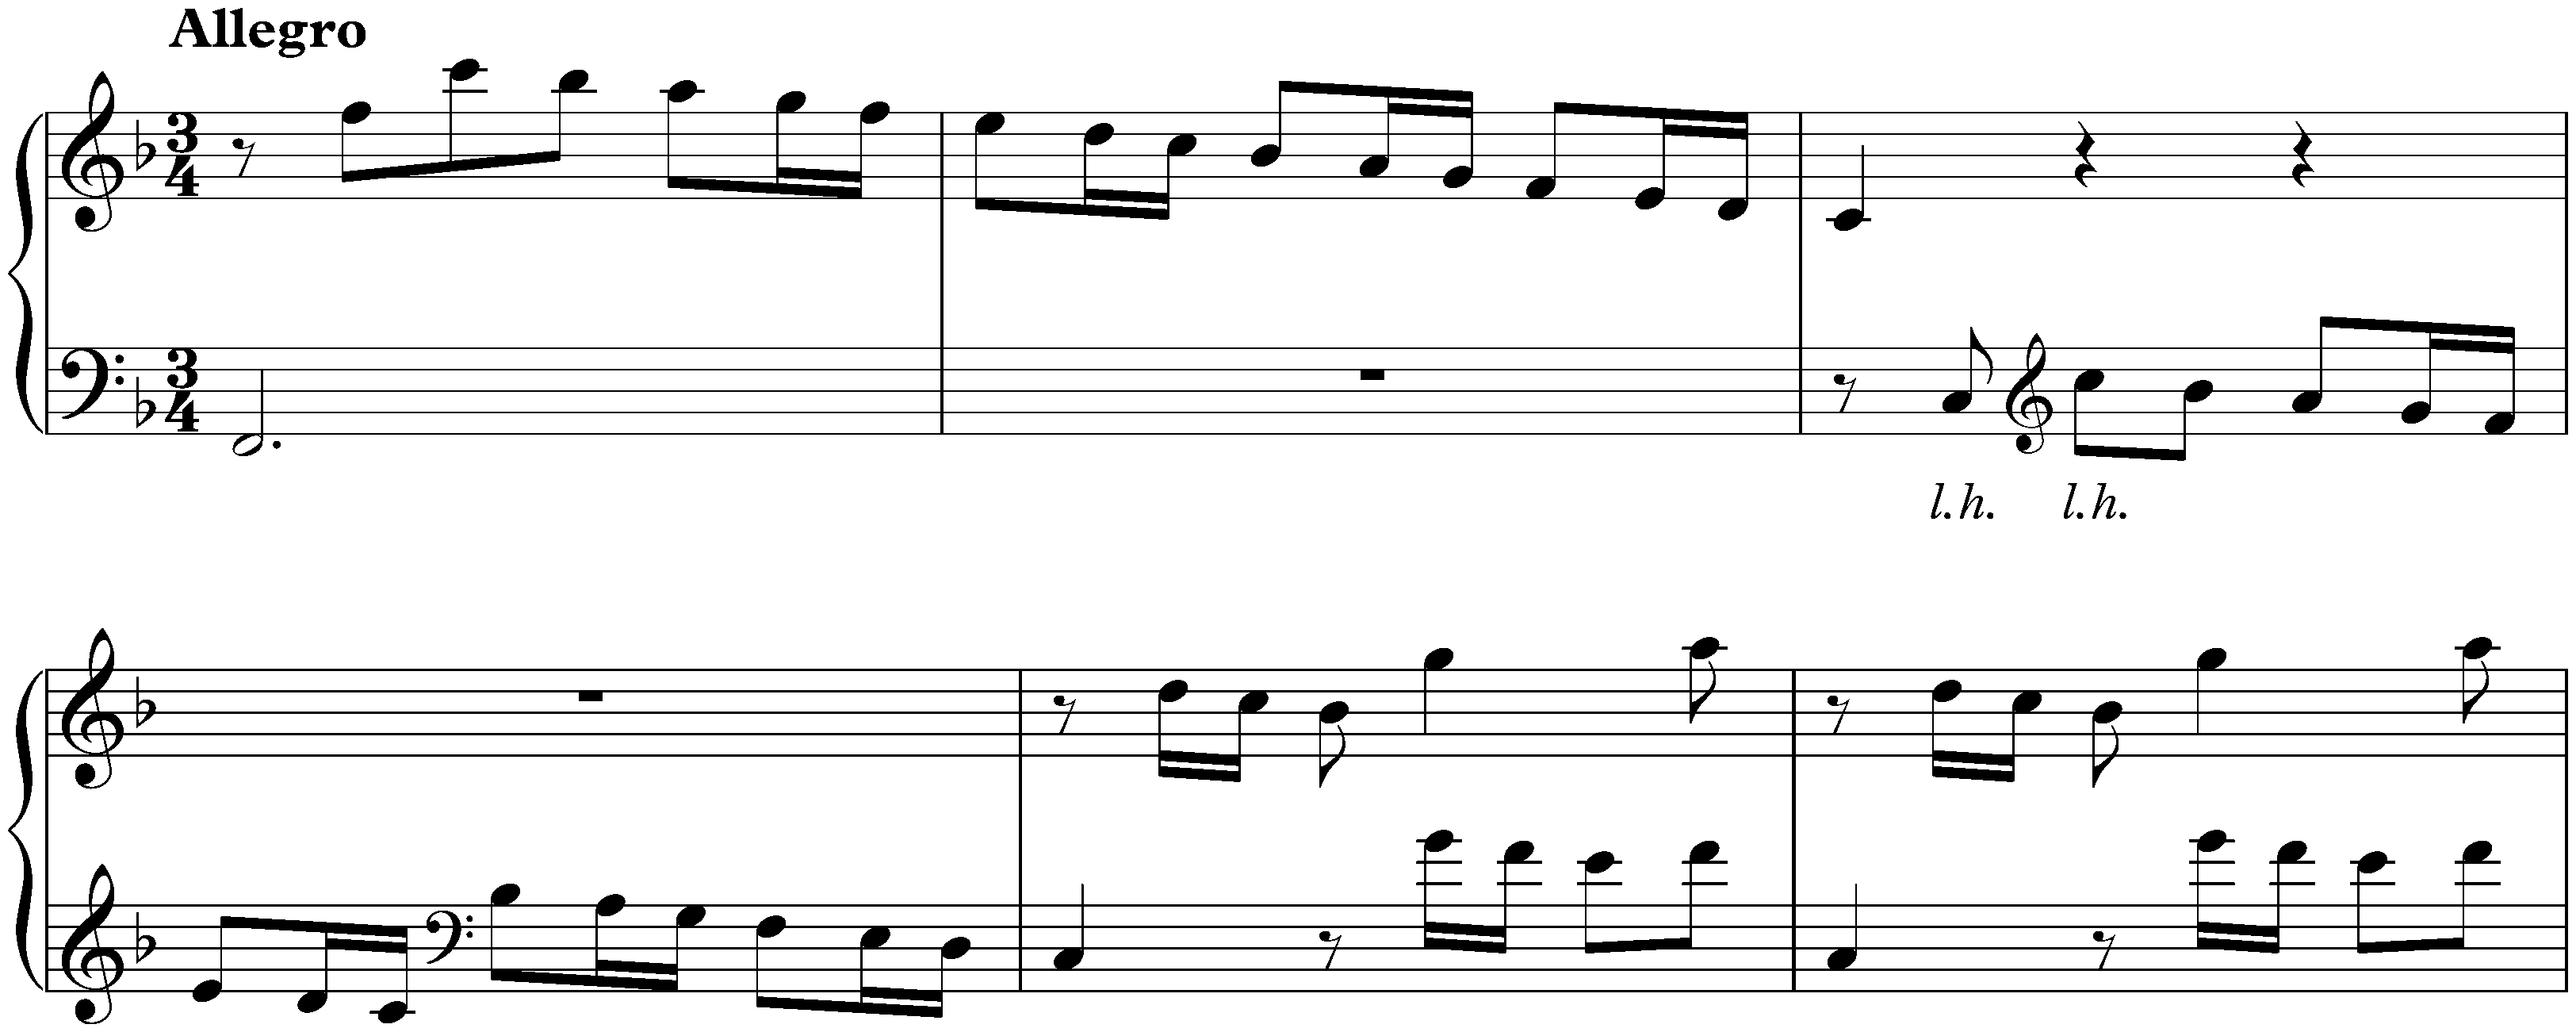 Sonata in F major, K. 468